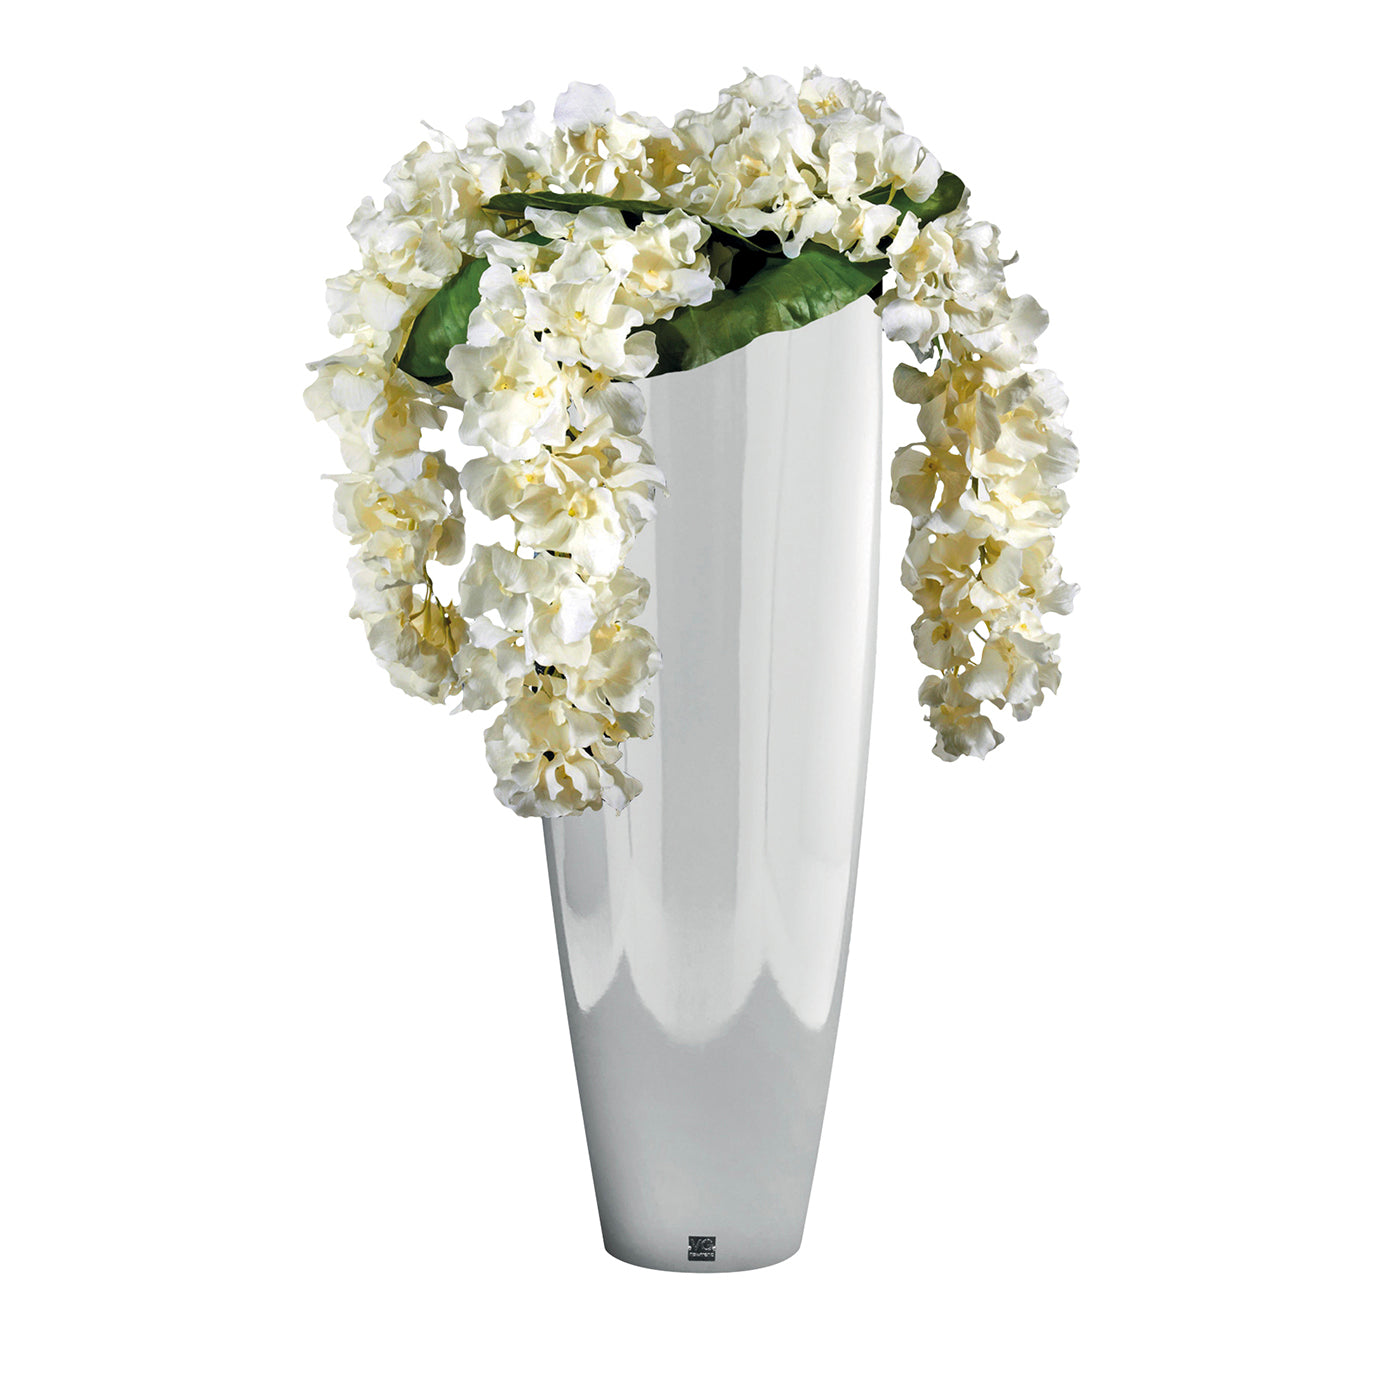 Composición floral de imitación Oslo con jarrón blanco - Vista principal